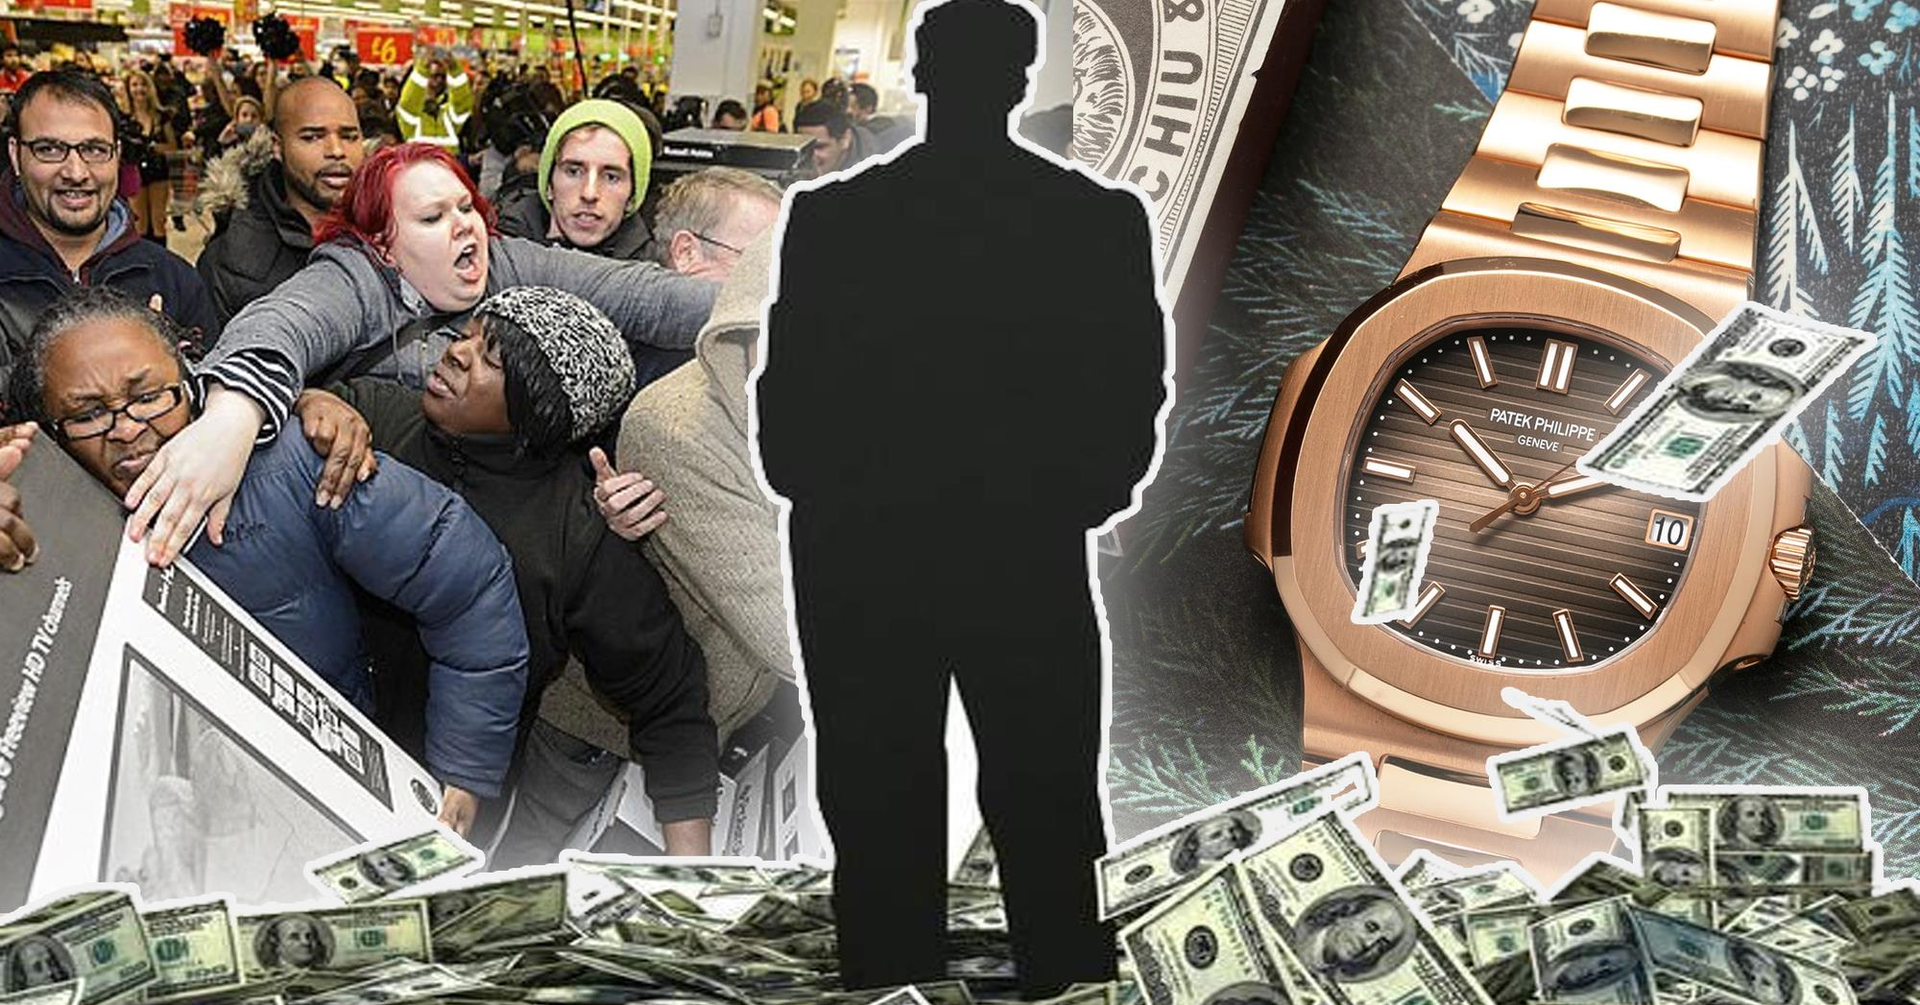 Buồn của người giàu: Bỏ hẳn 5,2 tỷ để “cơ cấu” mua 1 chiếc đồng hồ mà vẫn “bị xù”, tức quá kiện cửa hàng đòi bồi thường gấp đôi - Ảnh 1.